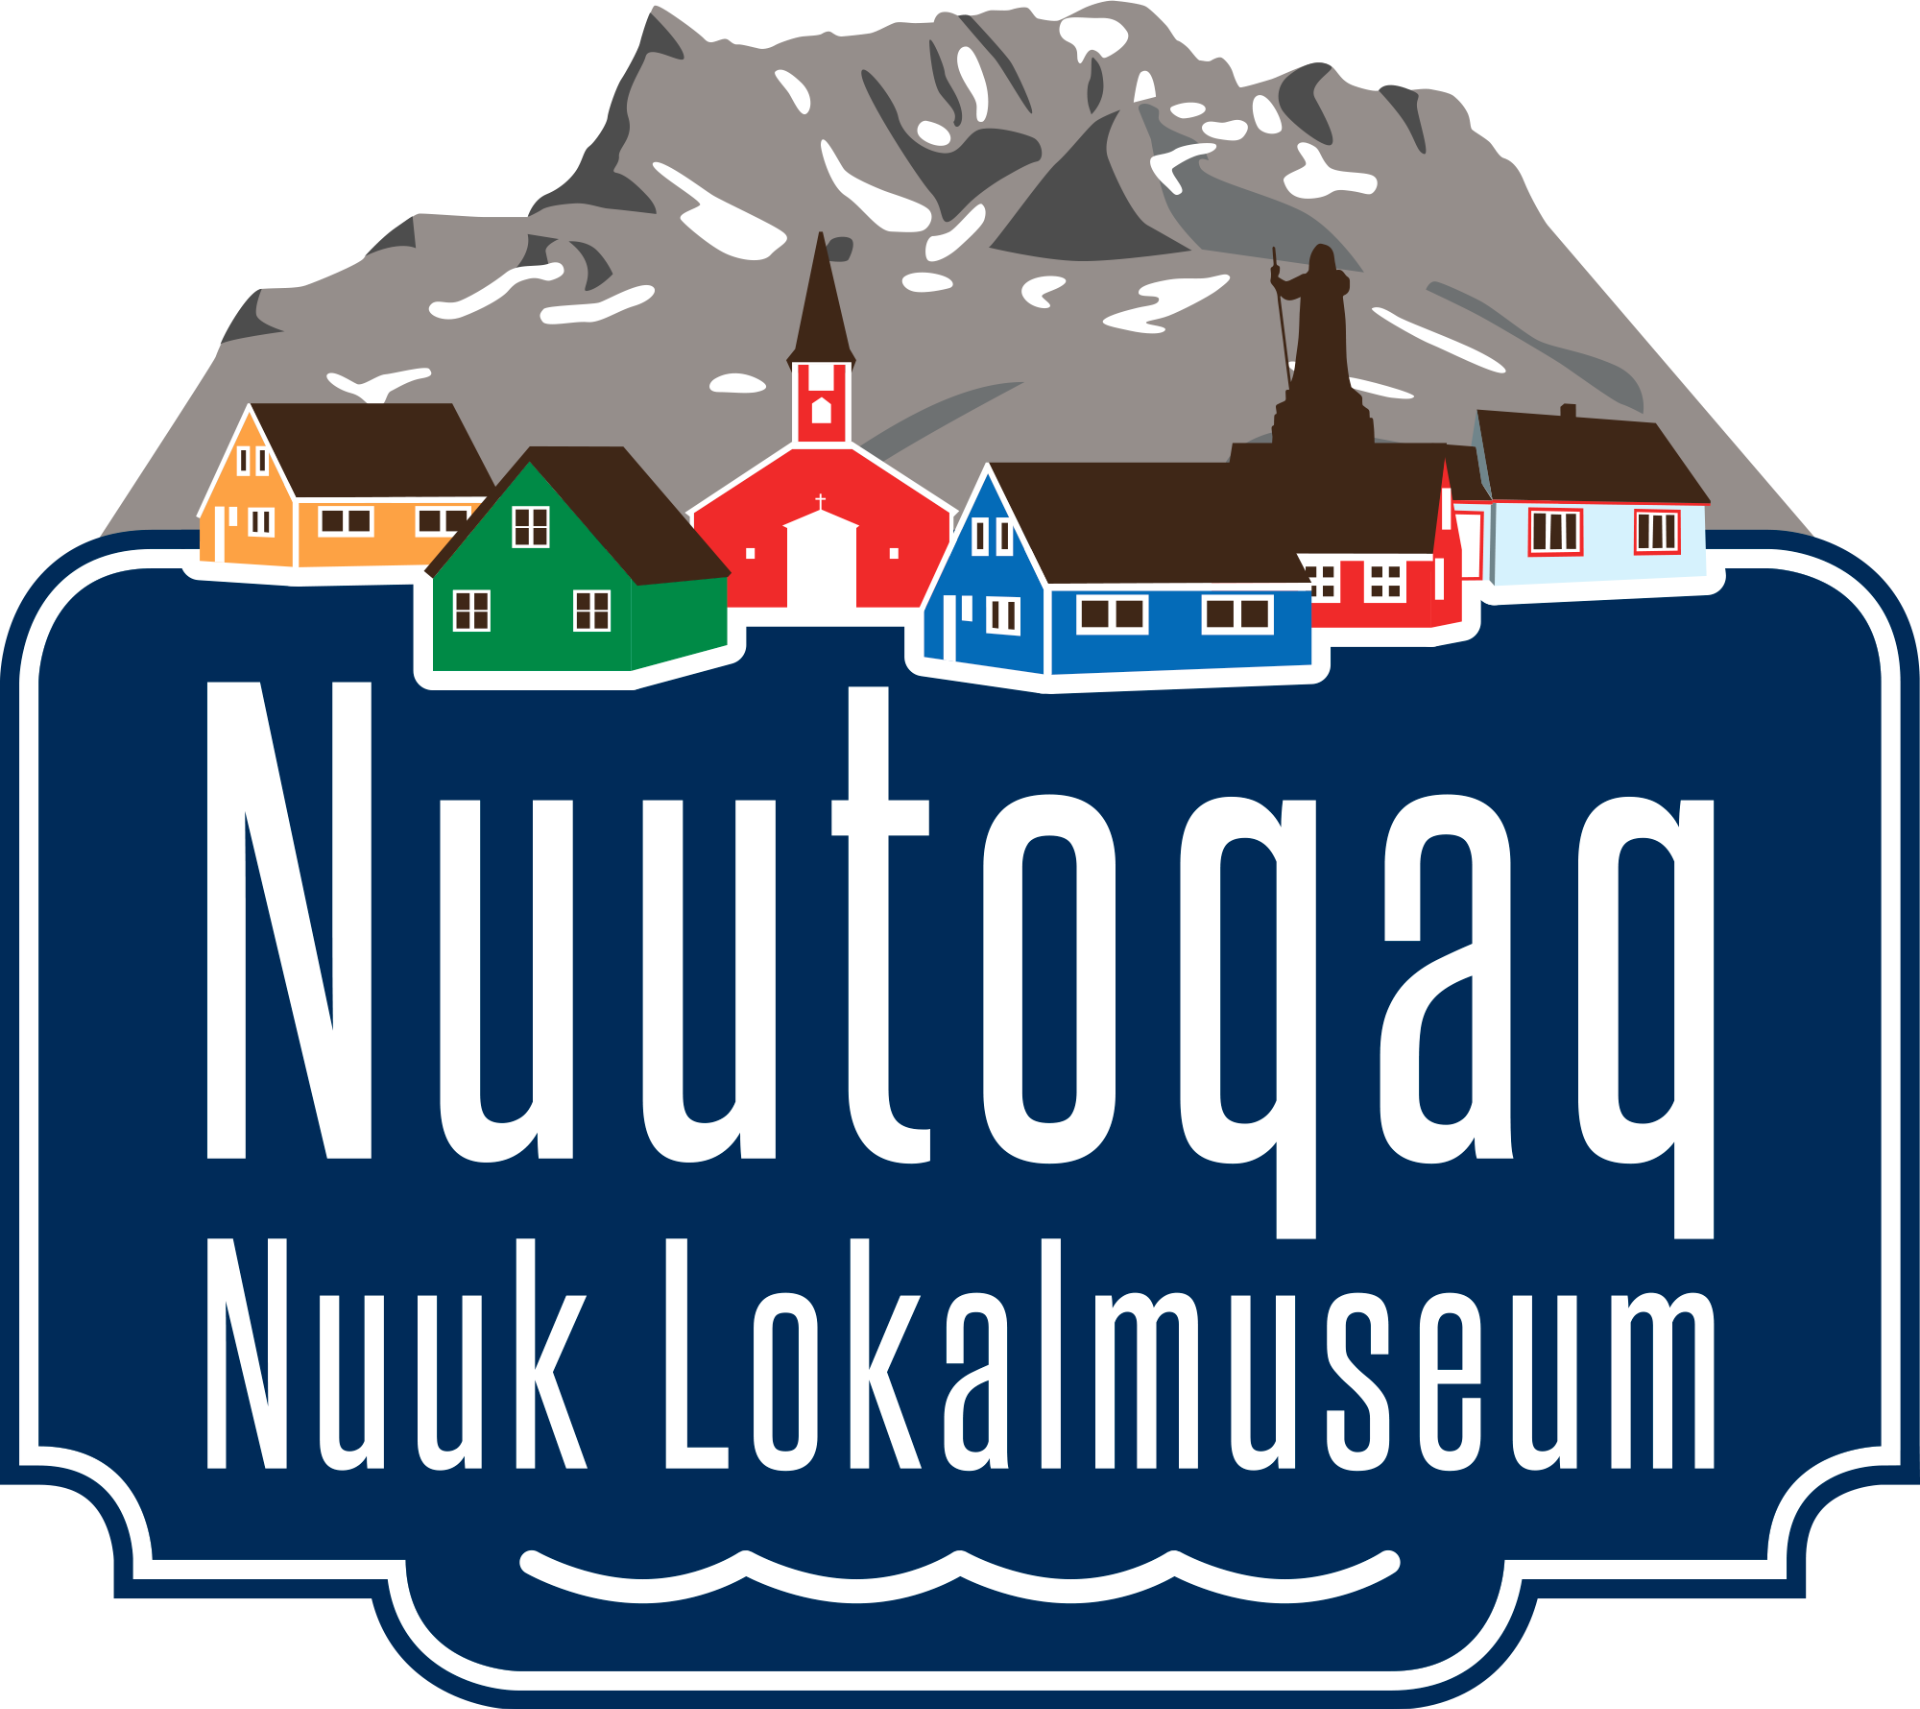 Nuutoqaq - Nuuk Lokalmuseum